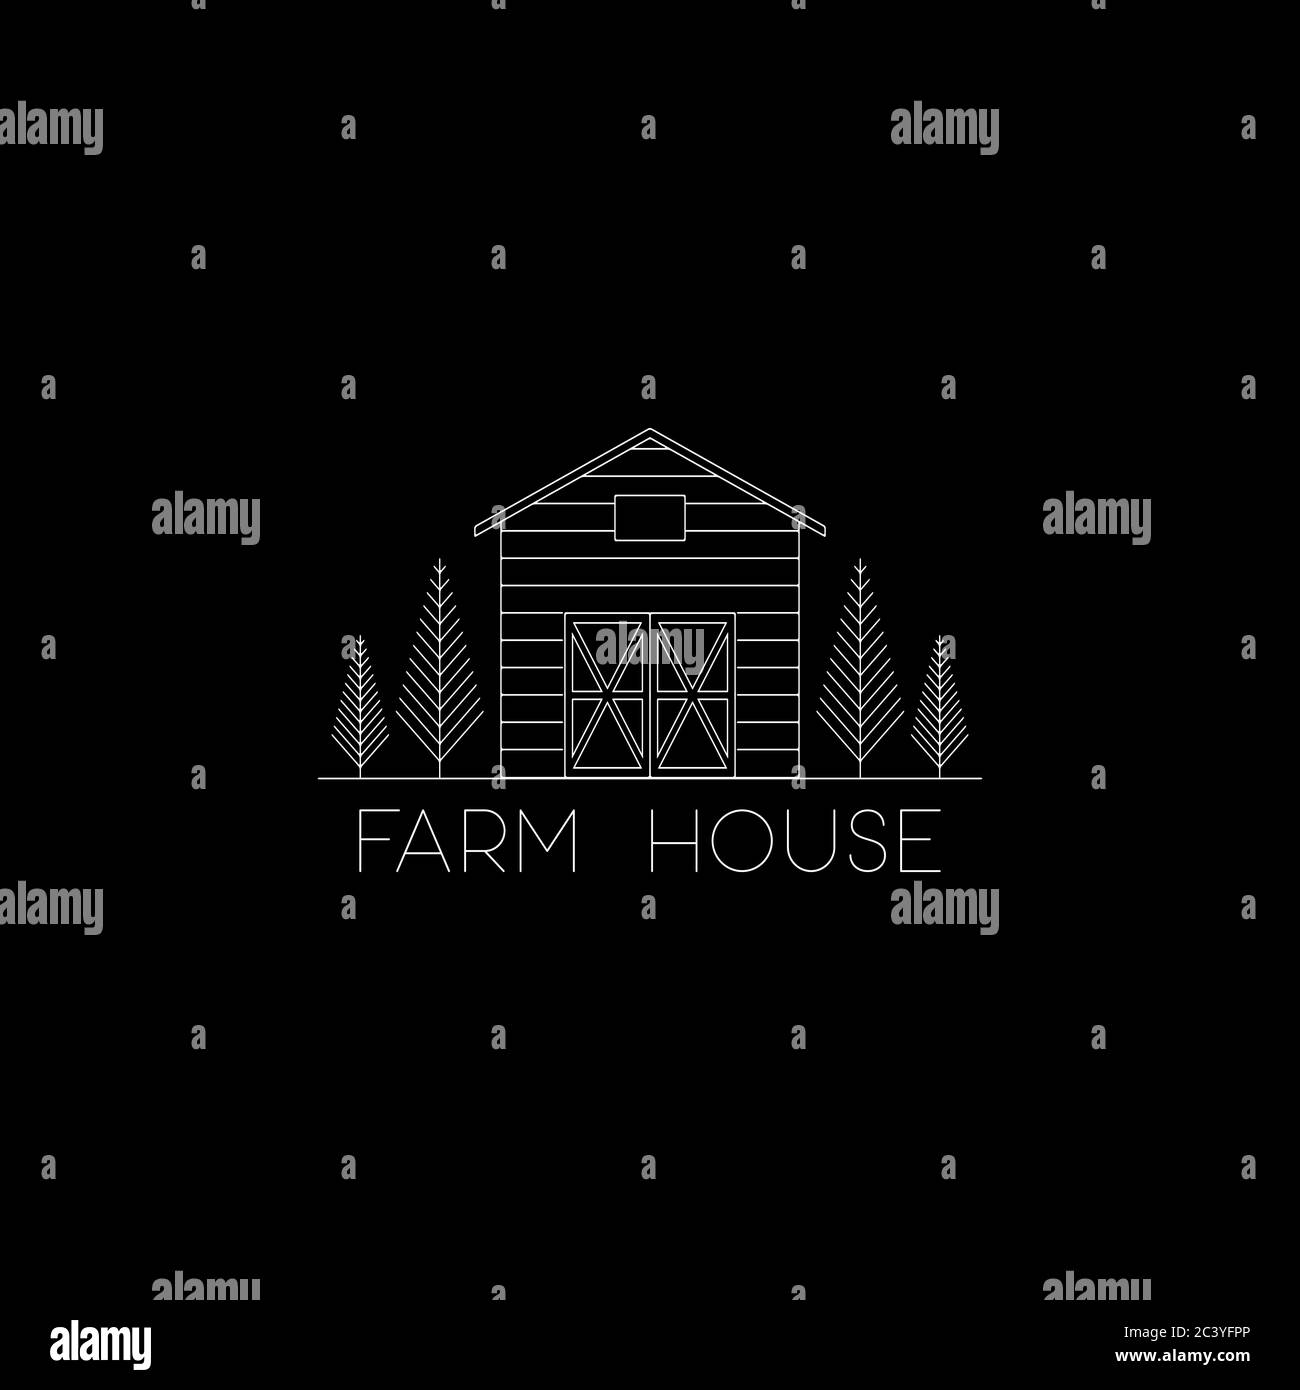 creative line art farm house logo vector with simple line art style logo design Stock Vector